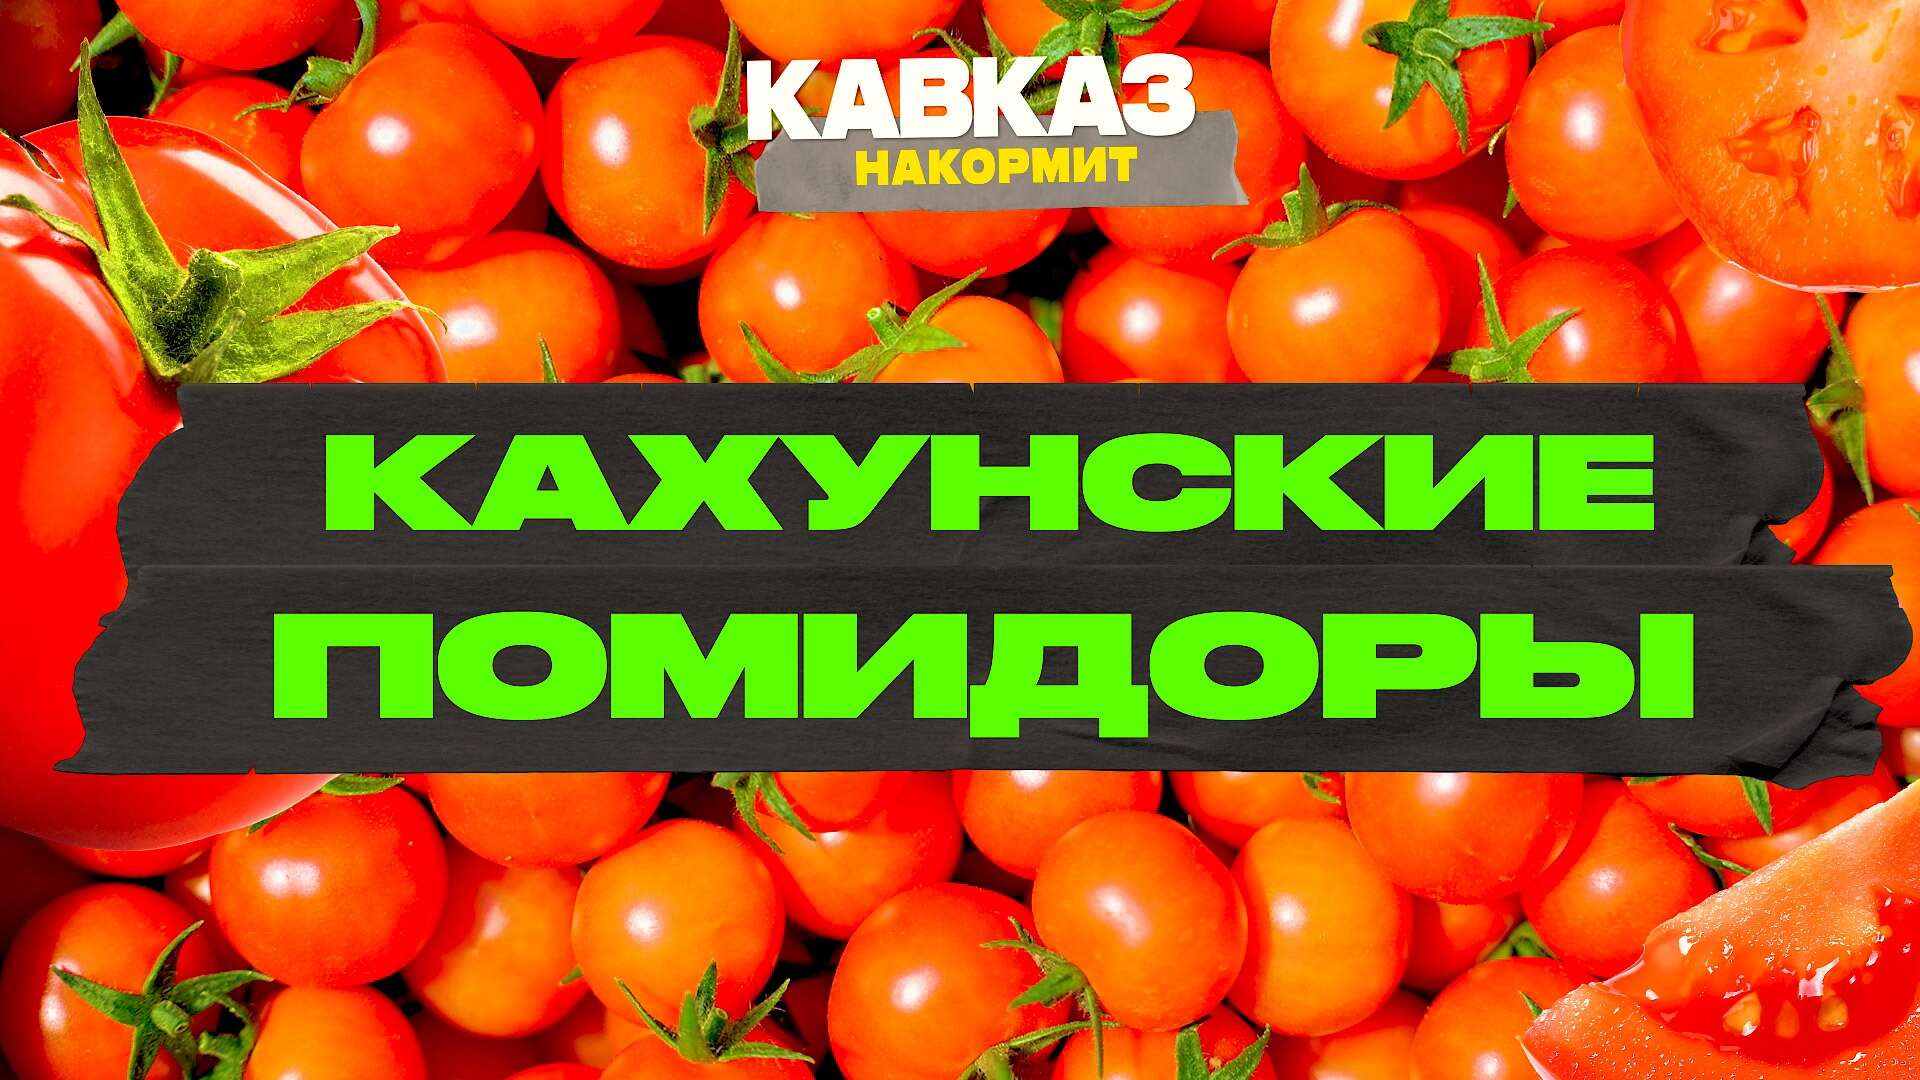 Кавказ Сегодня_Кавказ накормит. Кахунские помидоры